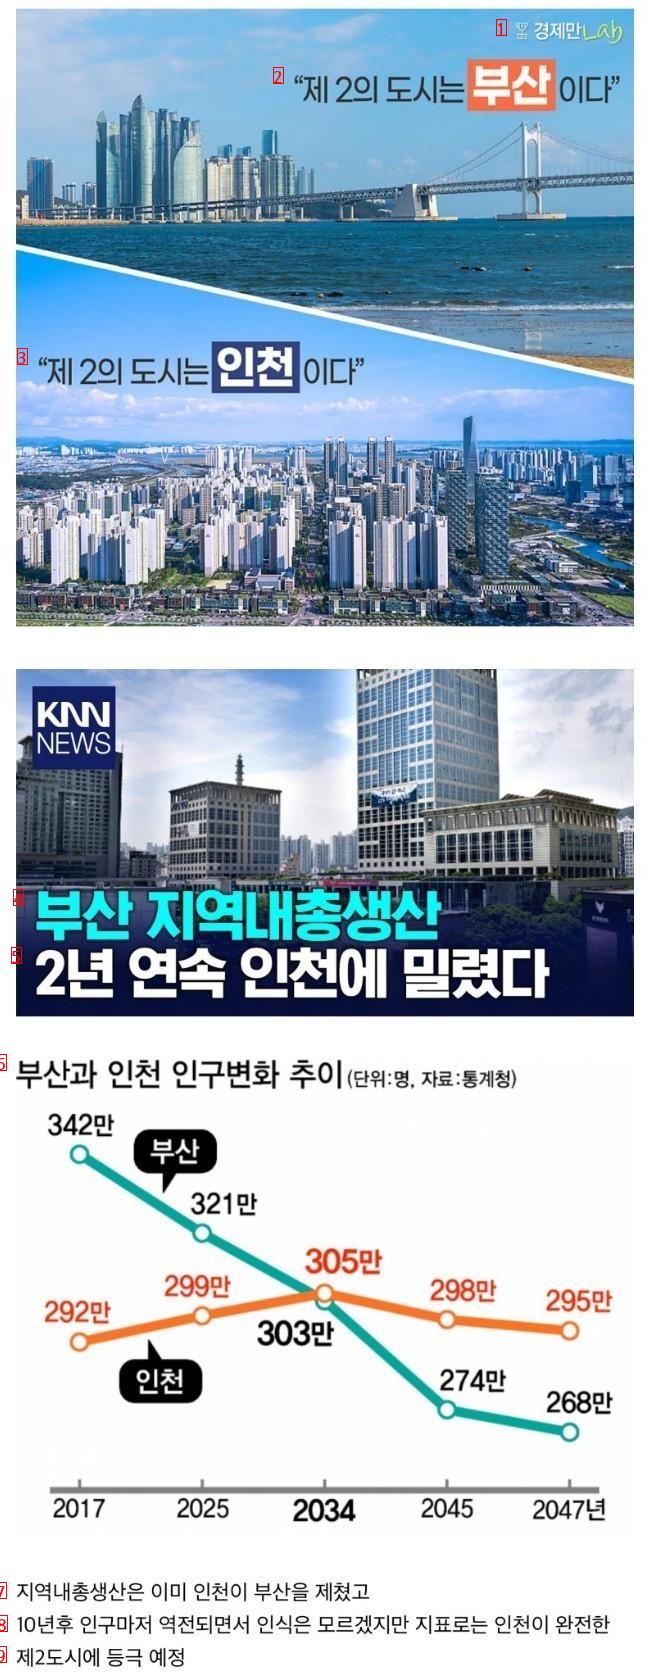 「10年後、大韓民国第2都市が変わるかも」